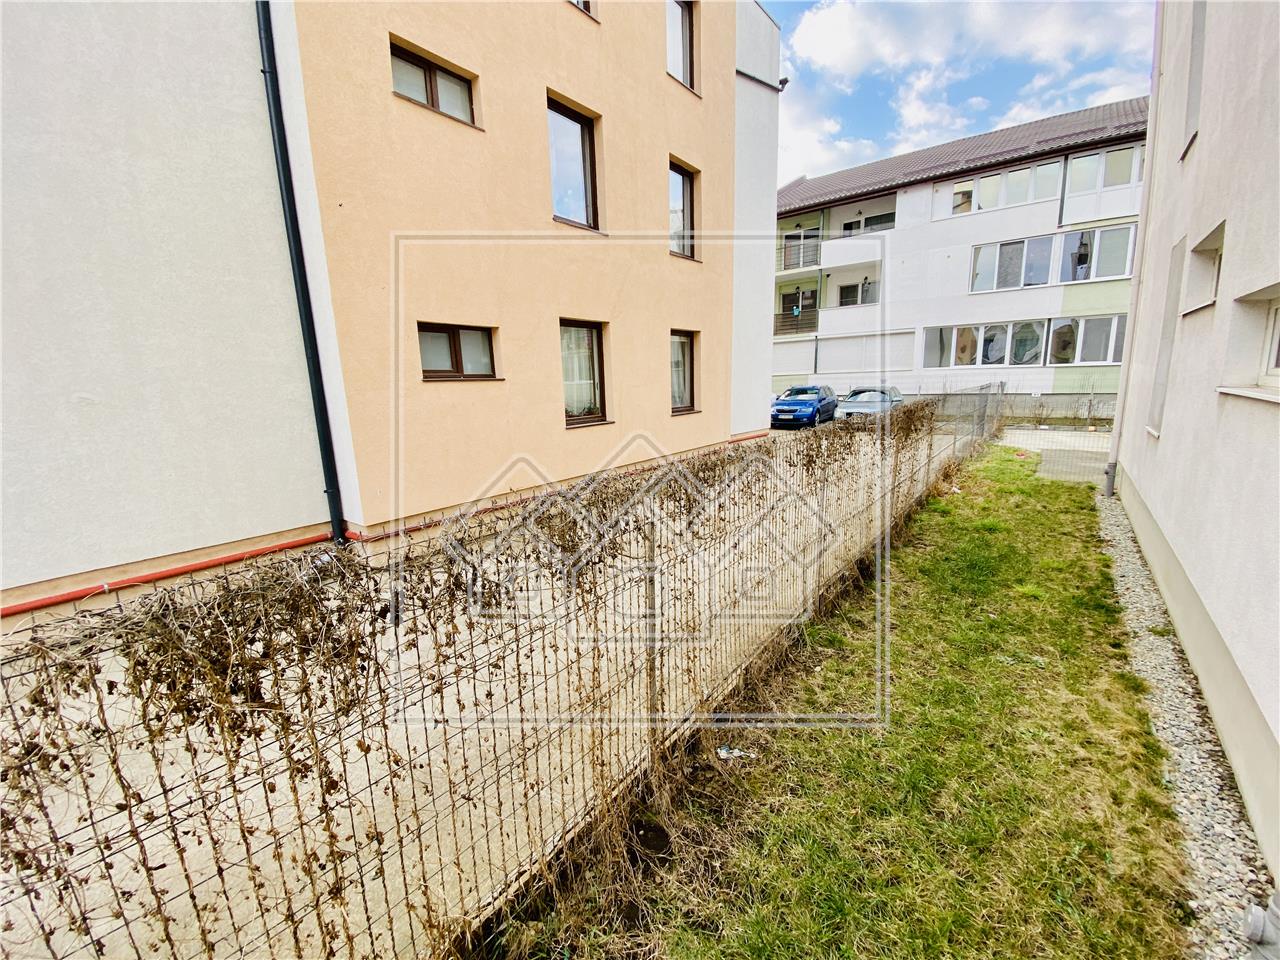 Wohnung zum Verkauf in Sibiu - 3 Zimmer, gro?er Balkon und Garten - Se